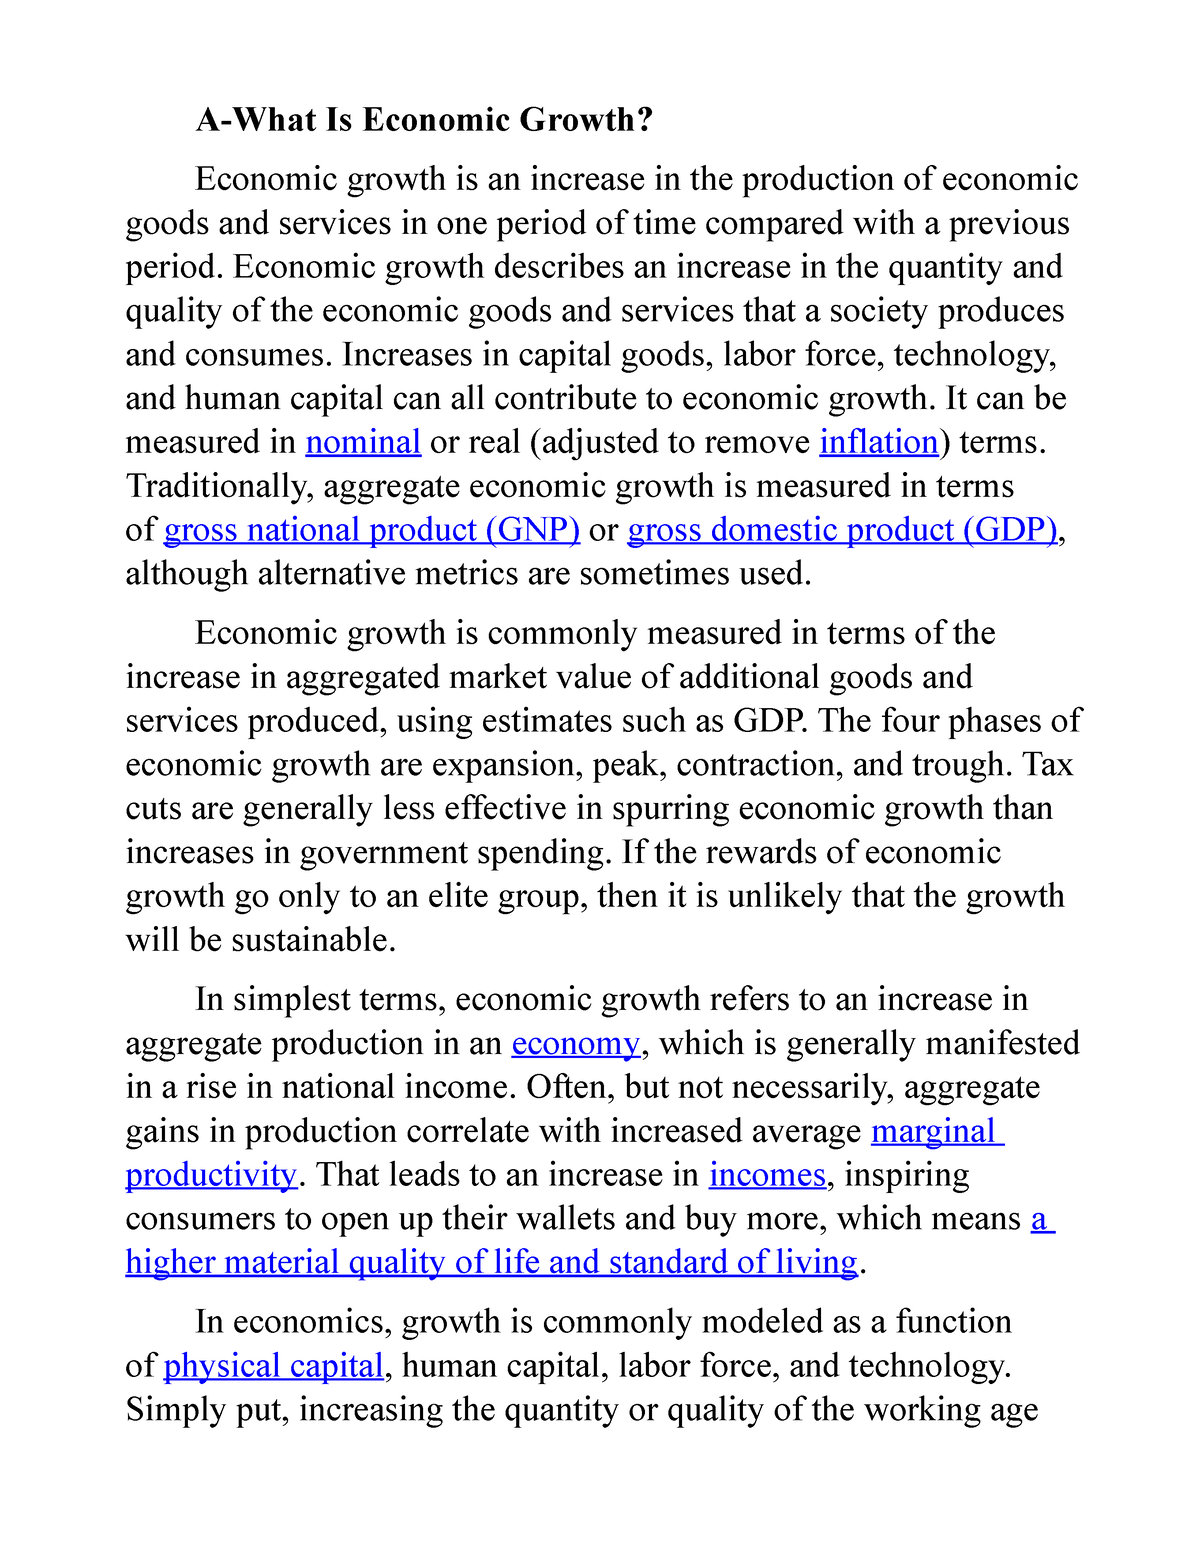 economic growth essay conclusion